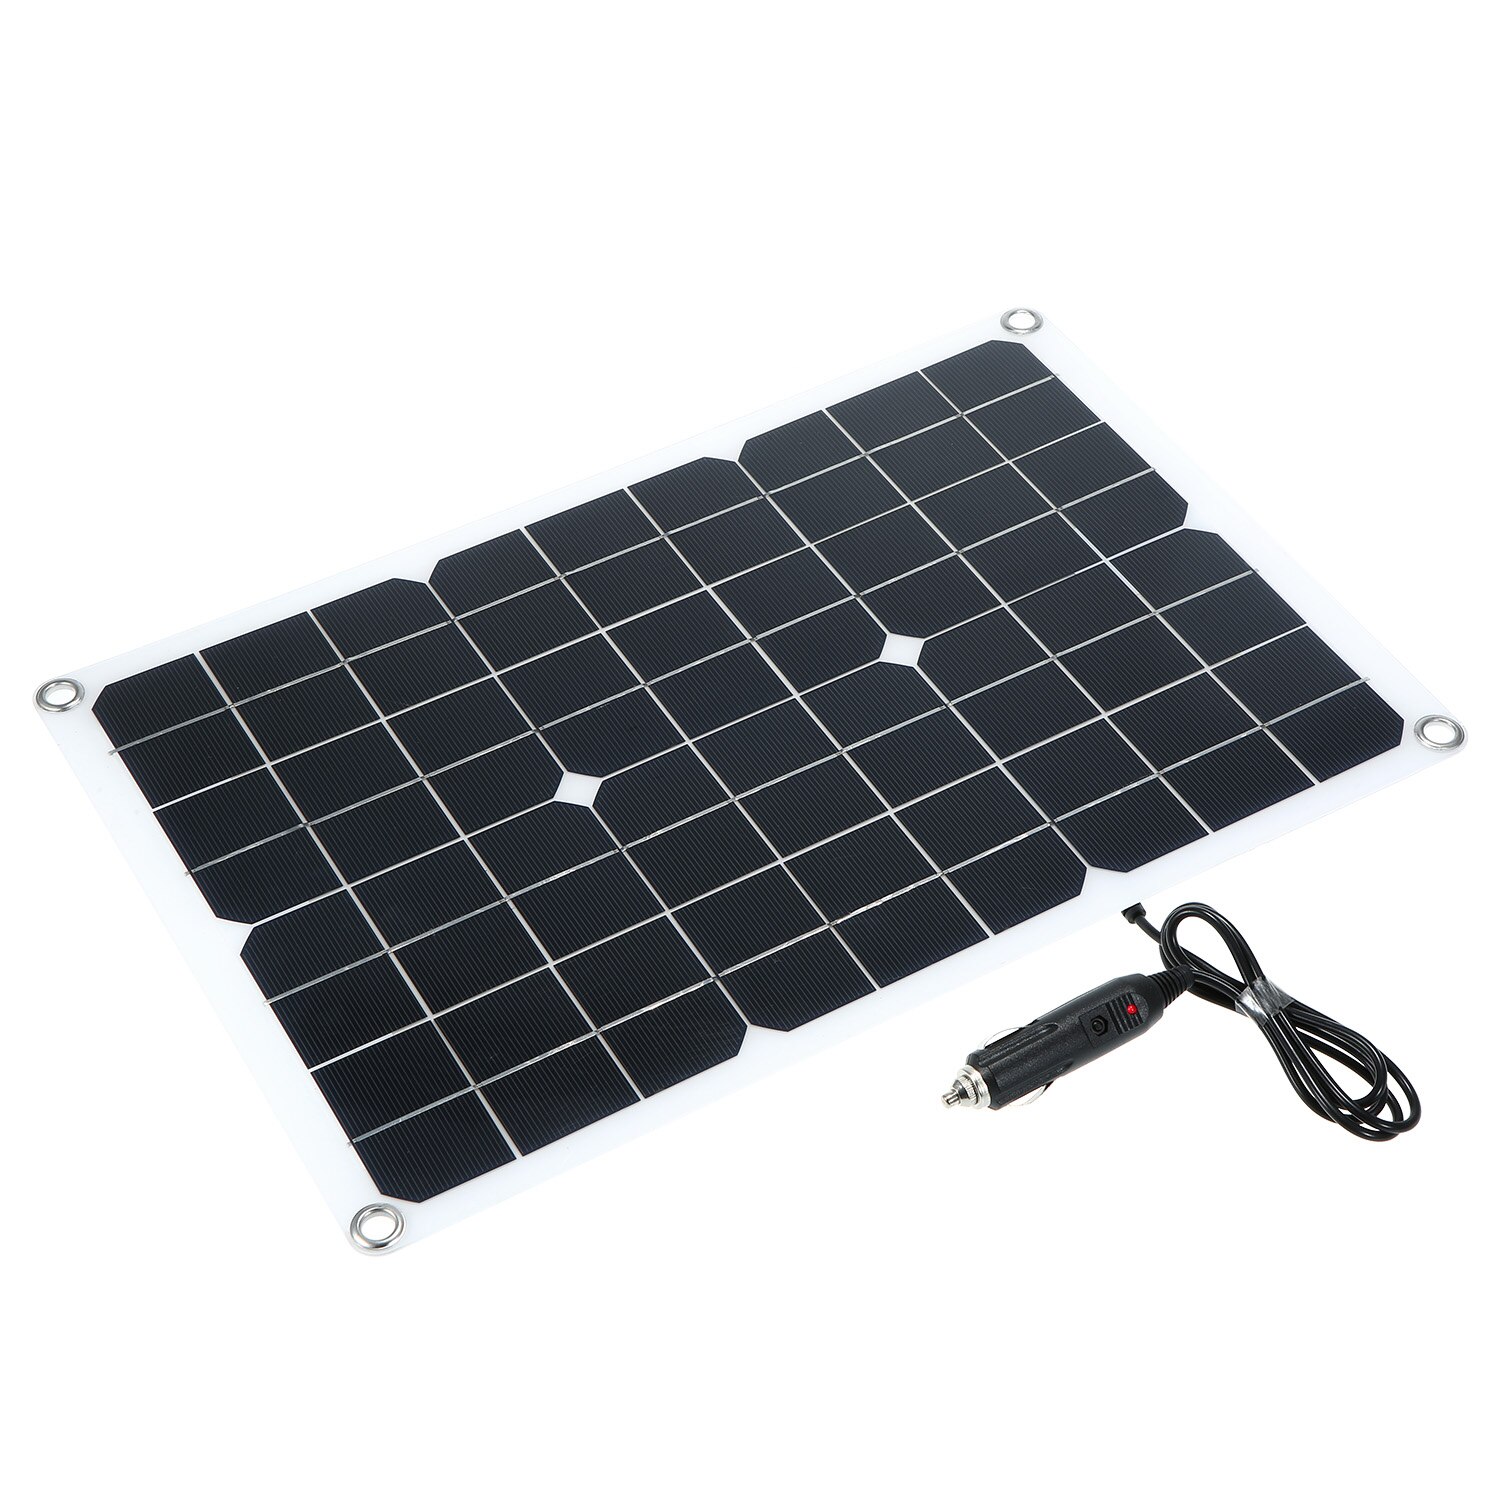 Solcellepanel 100w med 2 usb-interface monokrystallinsk solcelle diy modulbil batteriopladersæt vandtæt